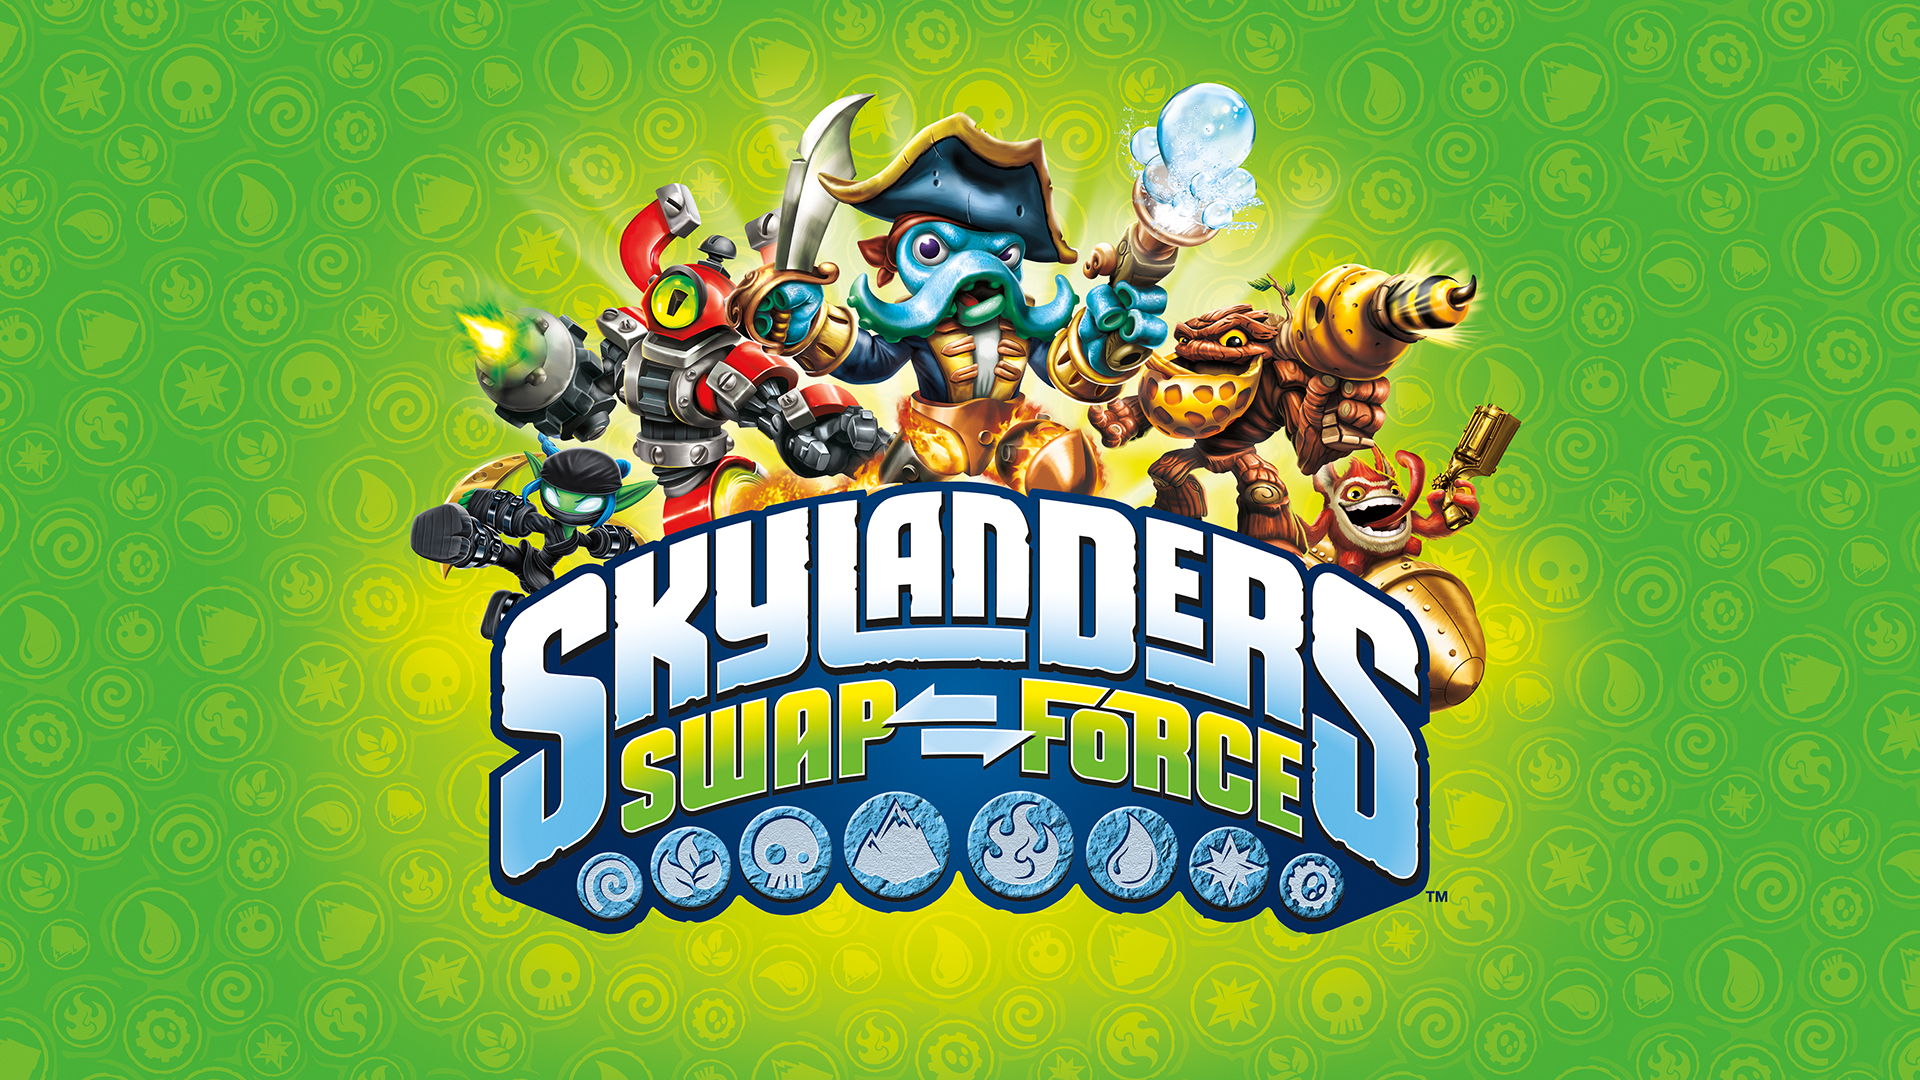 Skylanders Swap Force Video Game Wallpaper Of